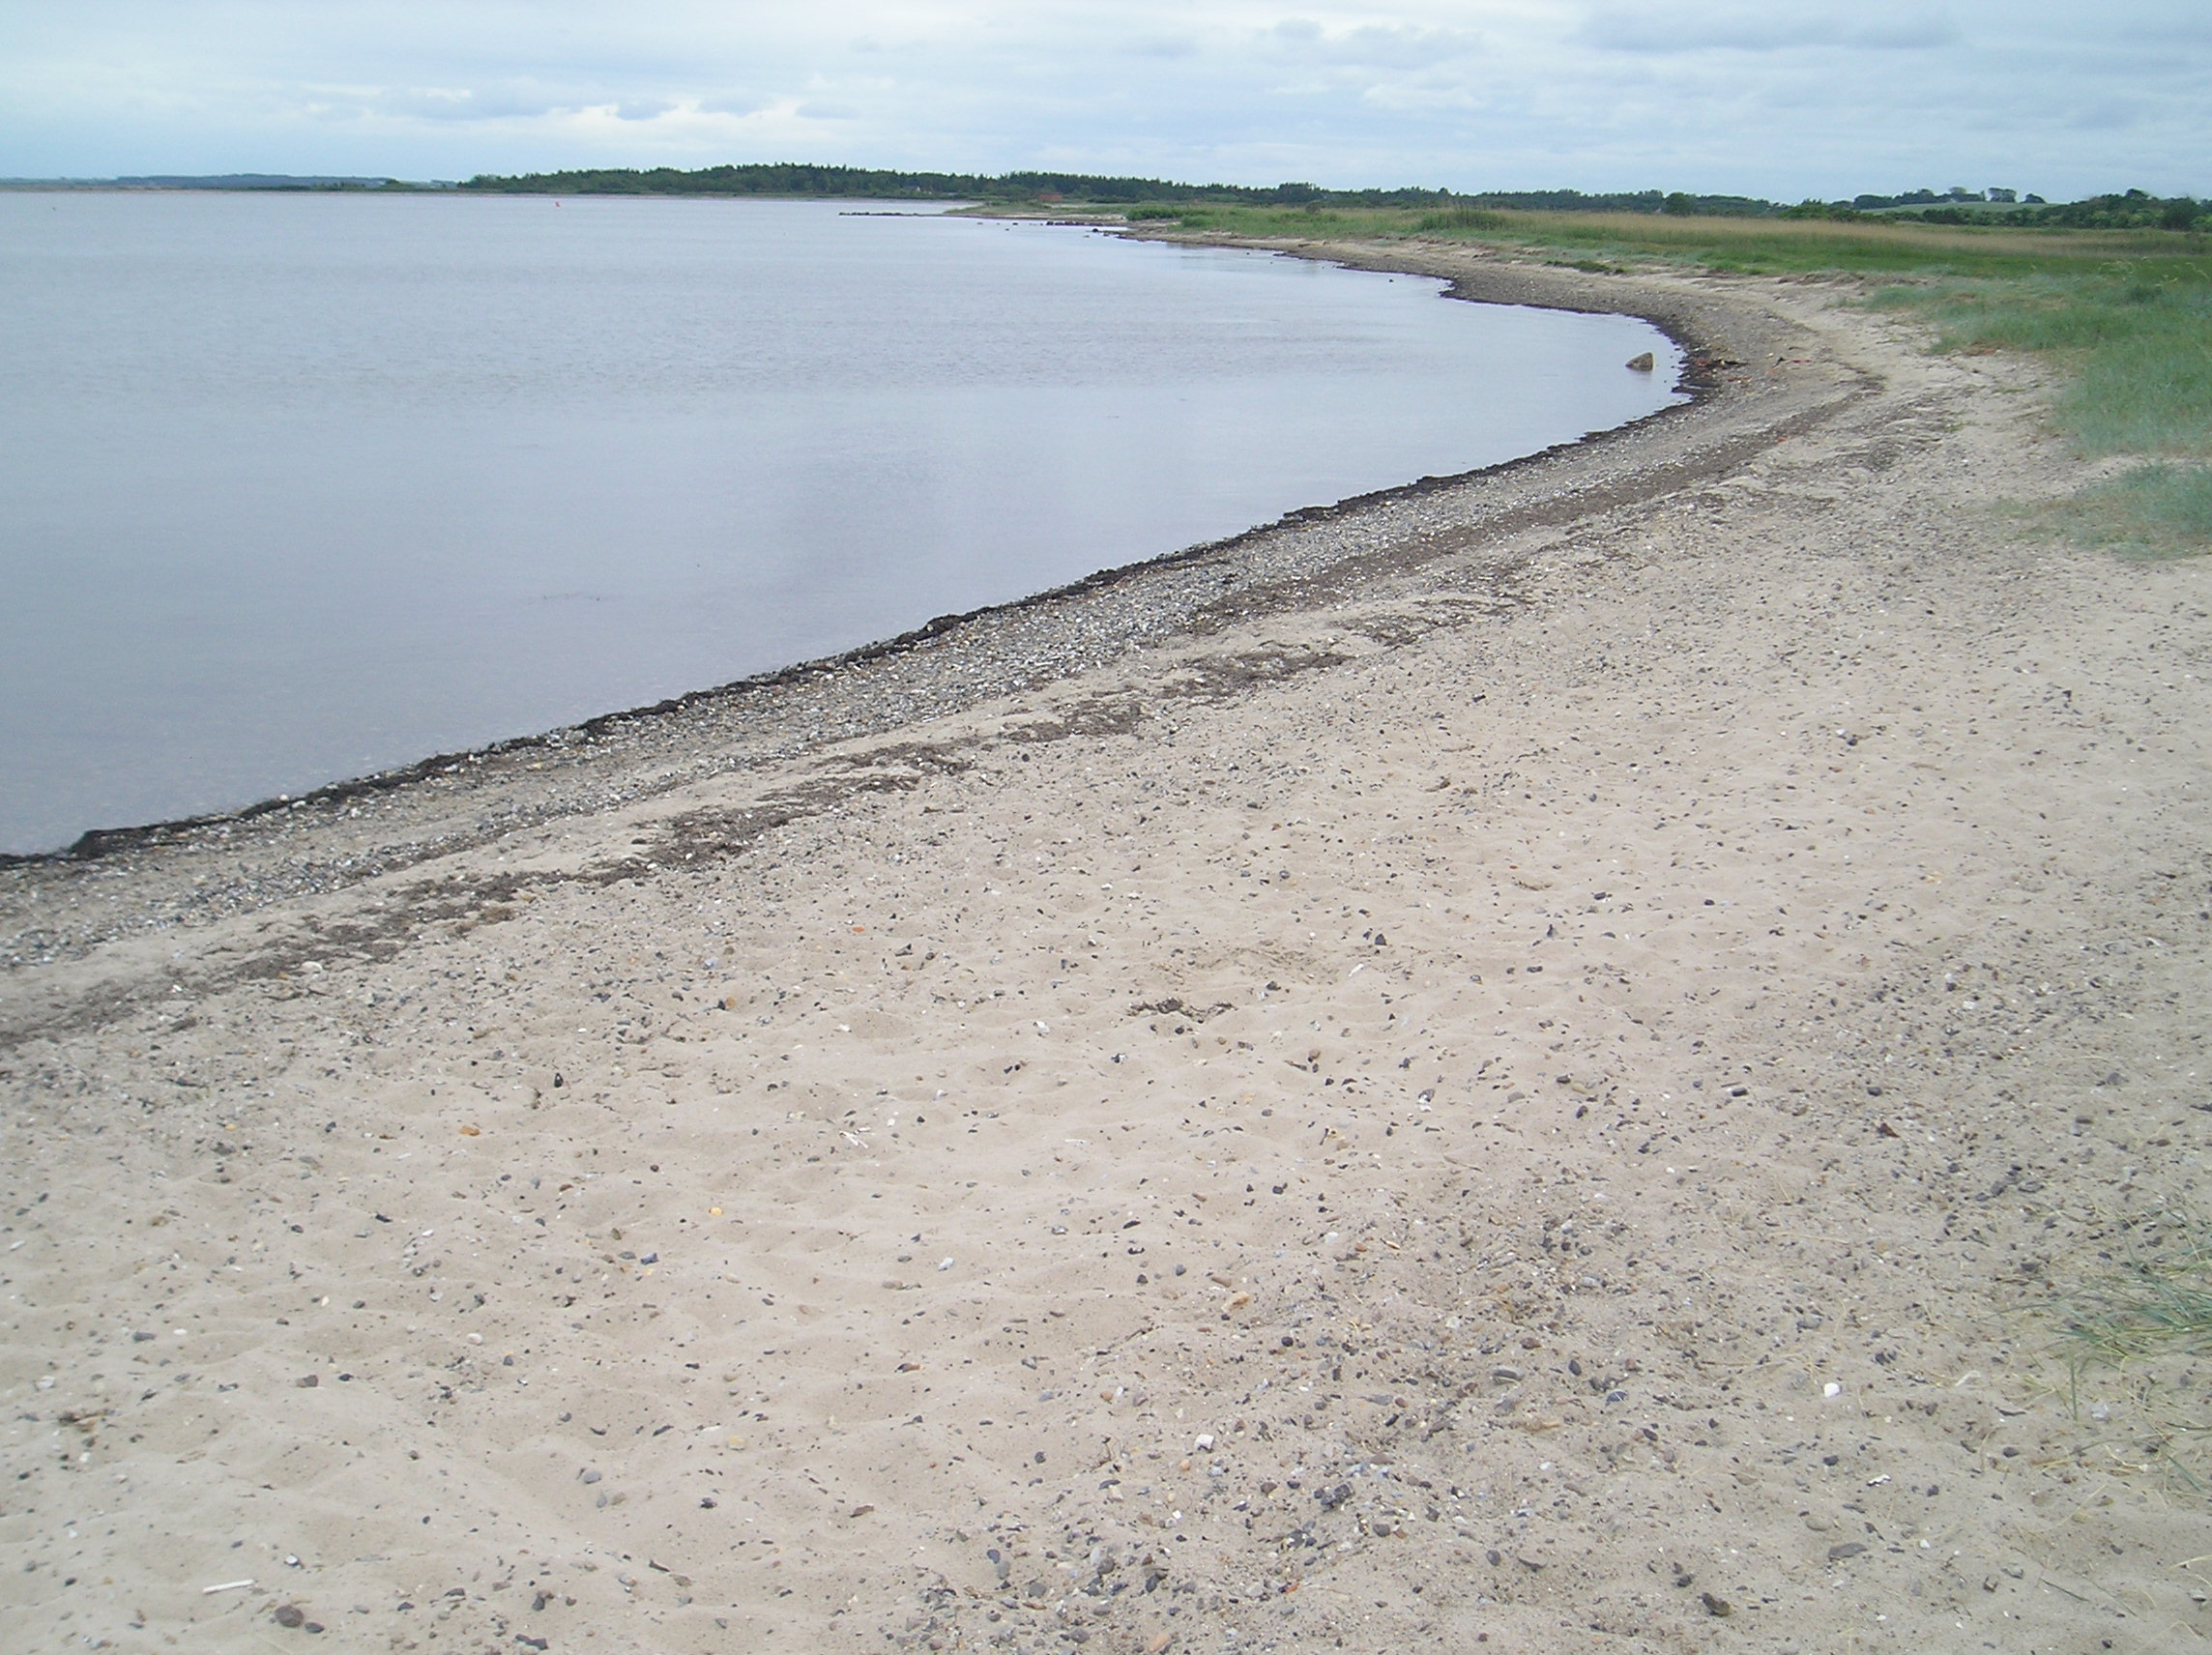 Strandens fysiske forhold Stranden ved Ørding består primært af fin sandstrand, dog iblandet småsten nede ved vandkanten, se figur 2. Havbunden består også primært af blandet sand og småsten.